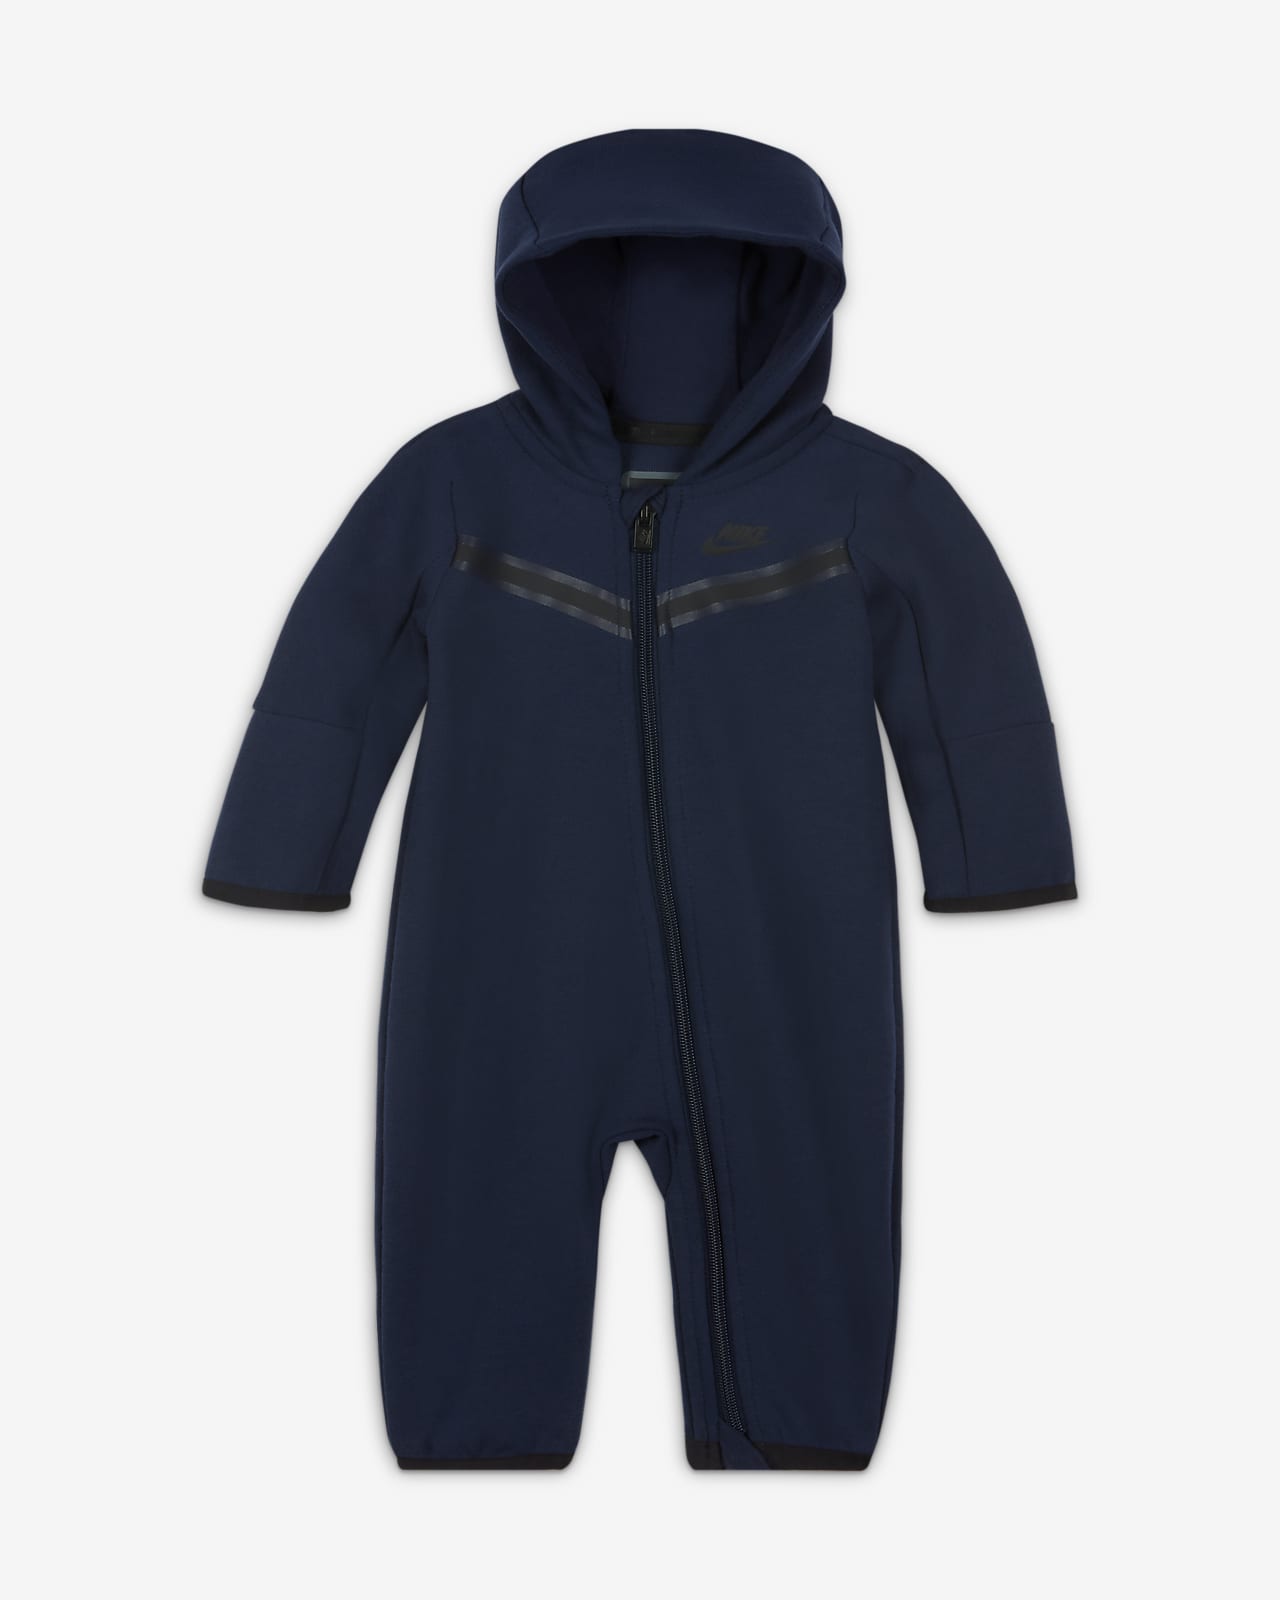 Nike Sportswear Tech Fleece Baby (0-9M) Full-Zip Coverall